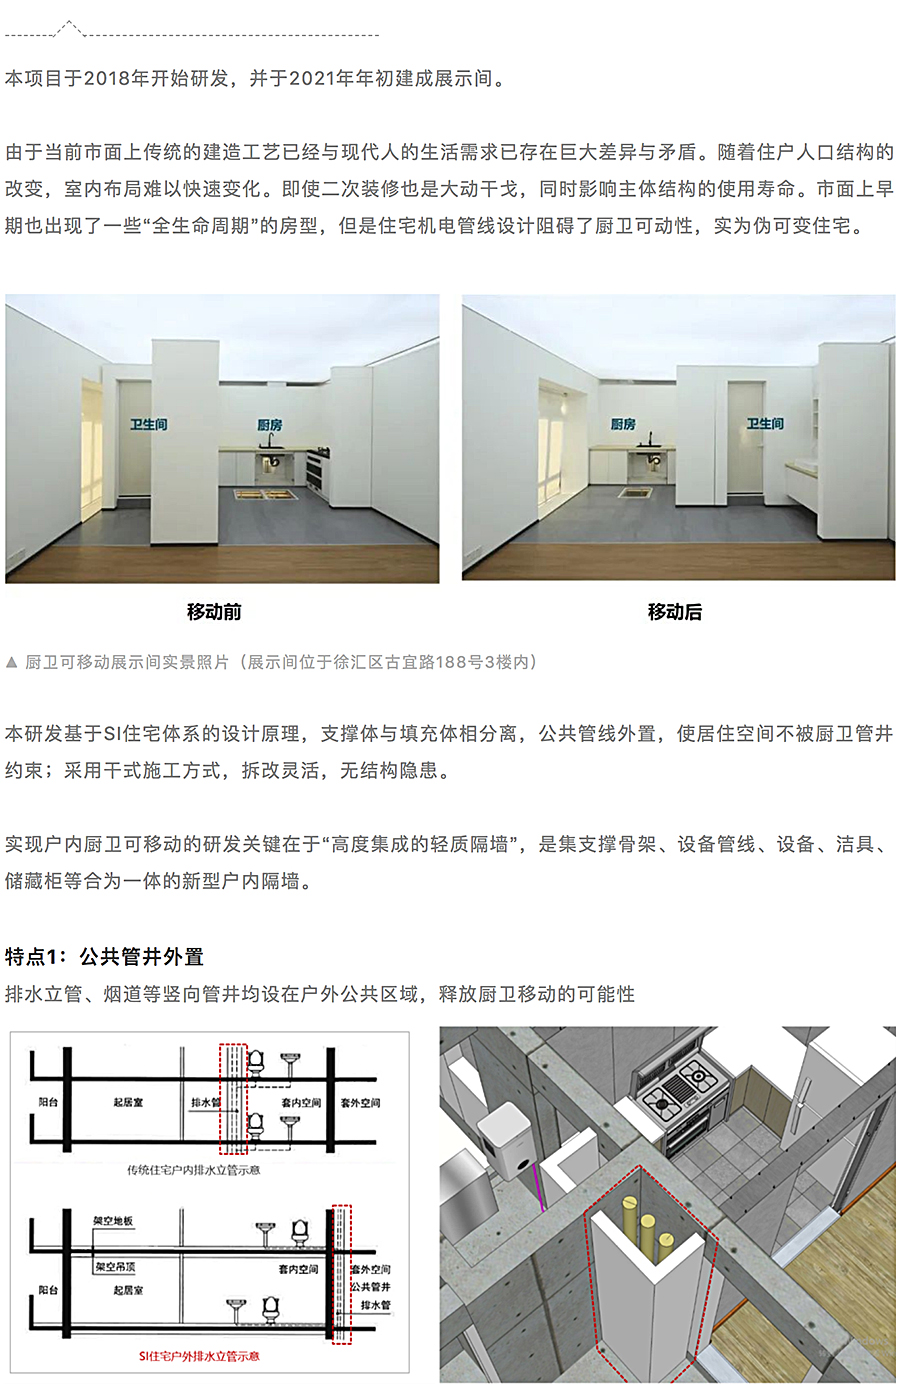 高度集成的轻质隔墙-_-SI厨卫可移动技术展示间_0001_图层-2.jpg